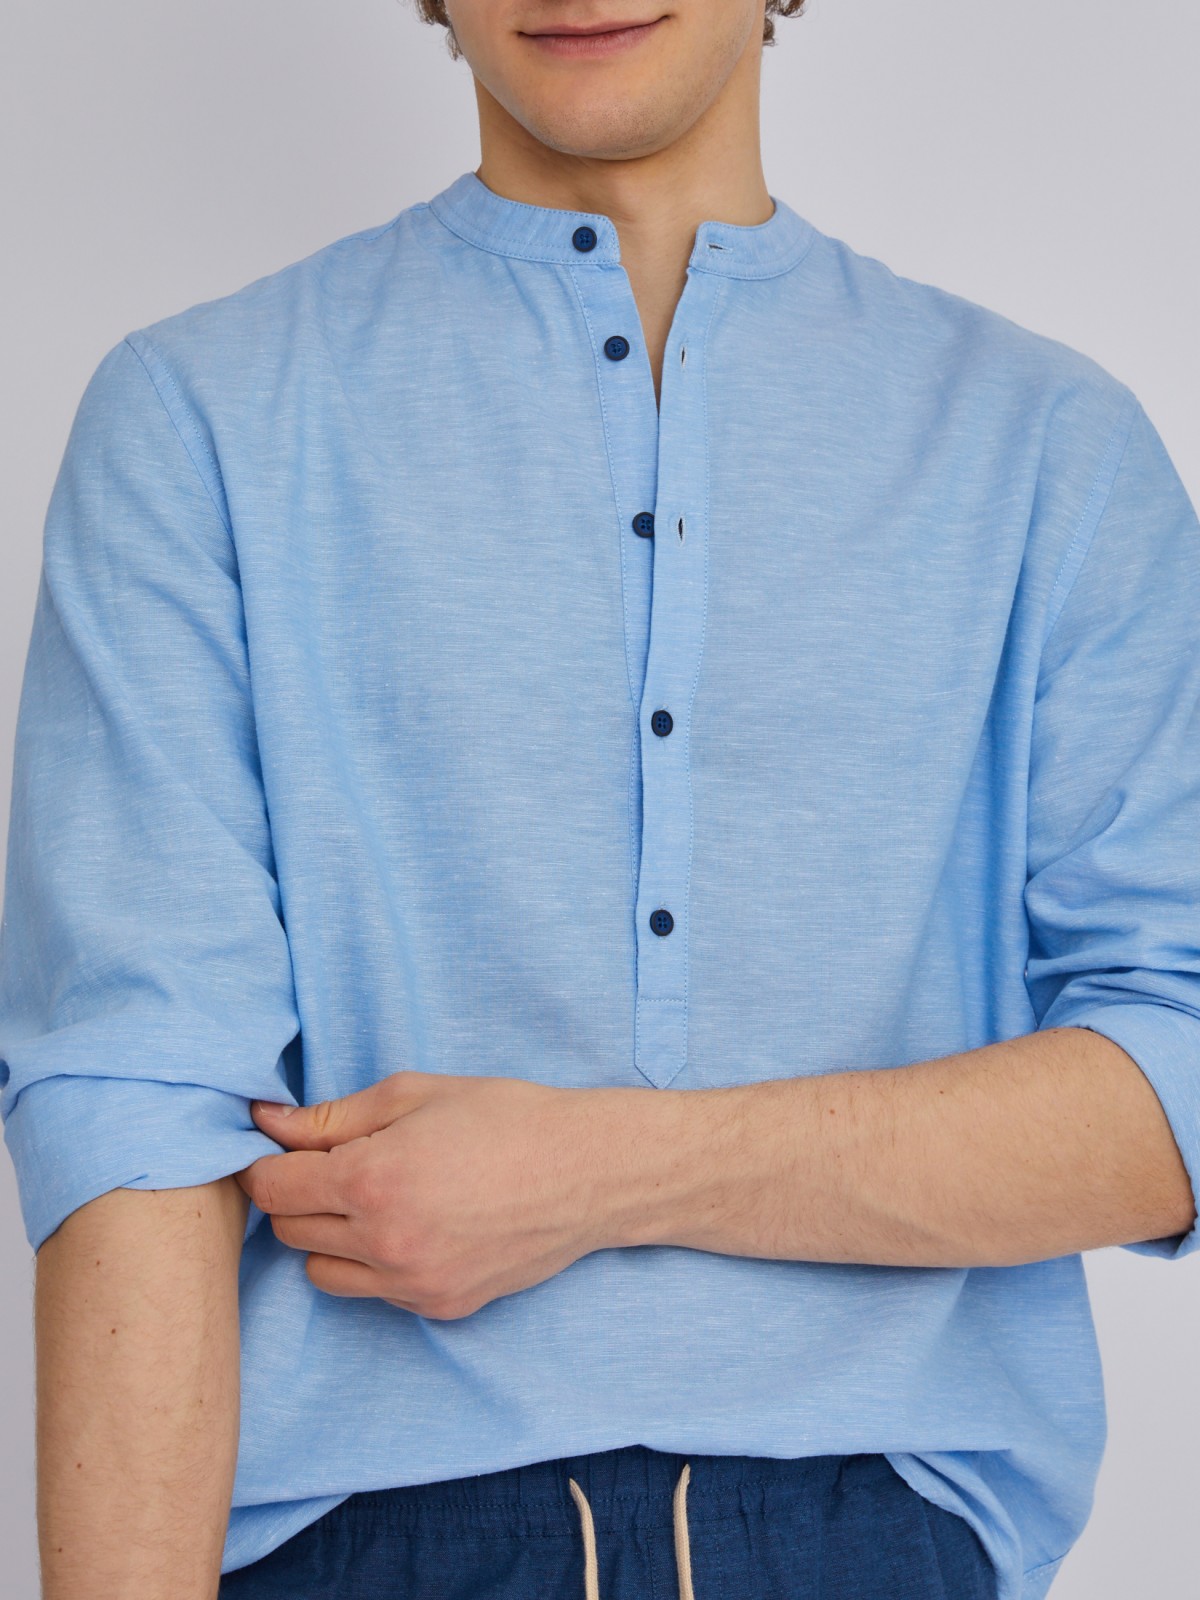 Рубашка из льна с длинным рукавом zolla 013232159013, цвет светло-голубой, размер S - фото 4